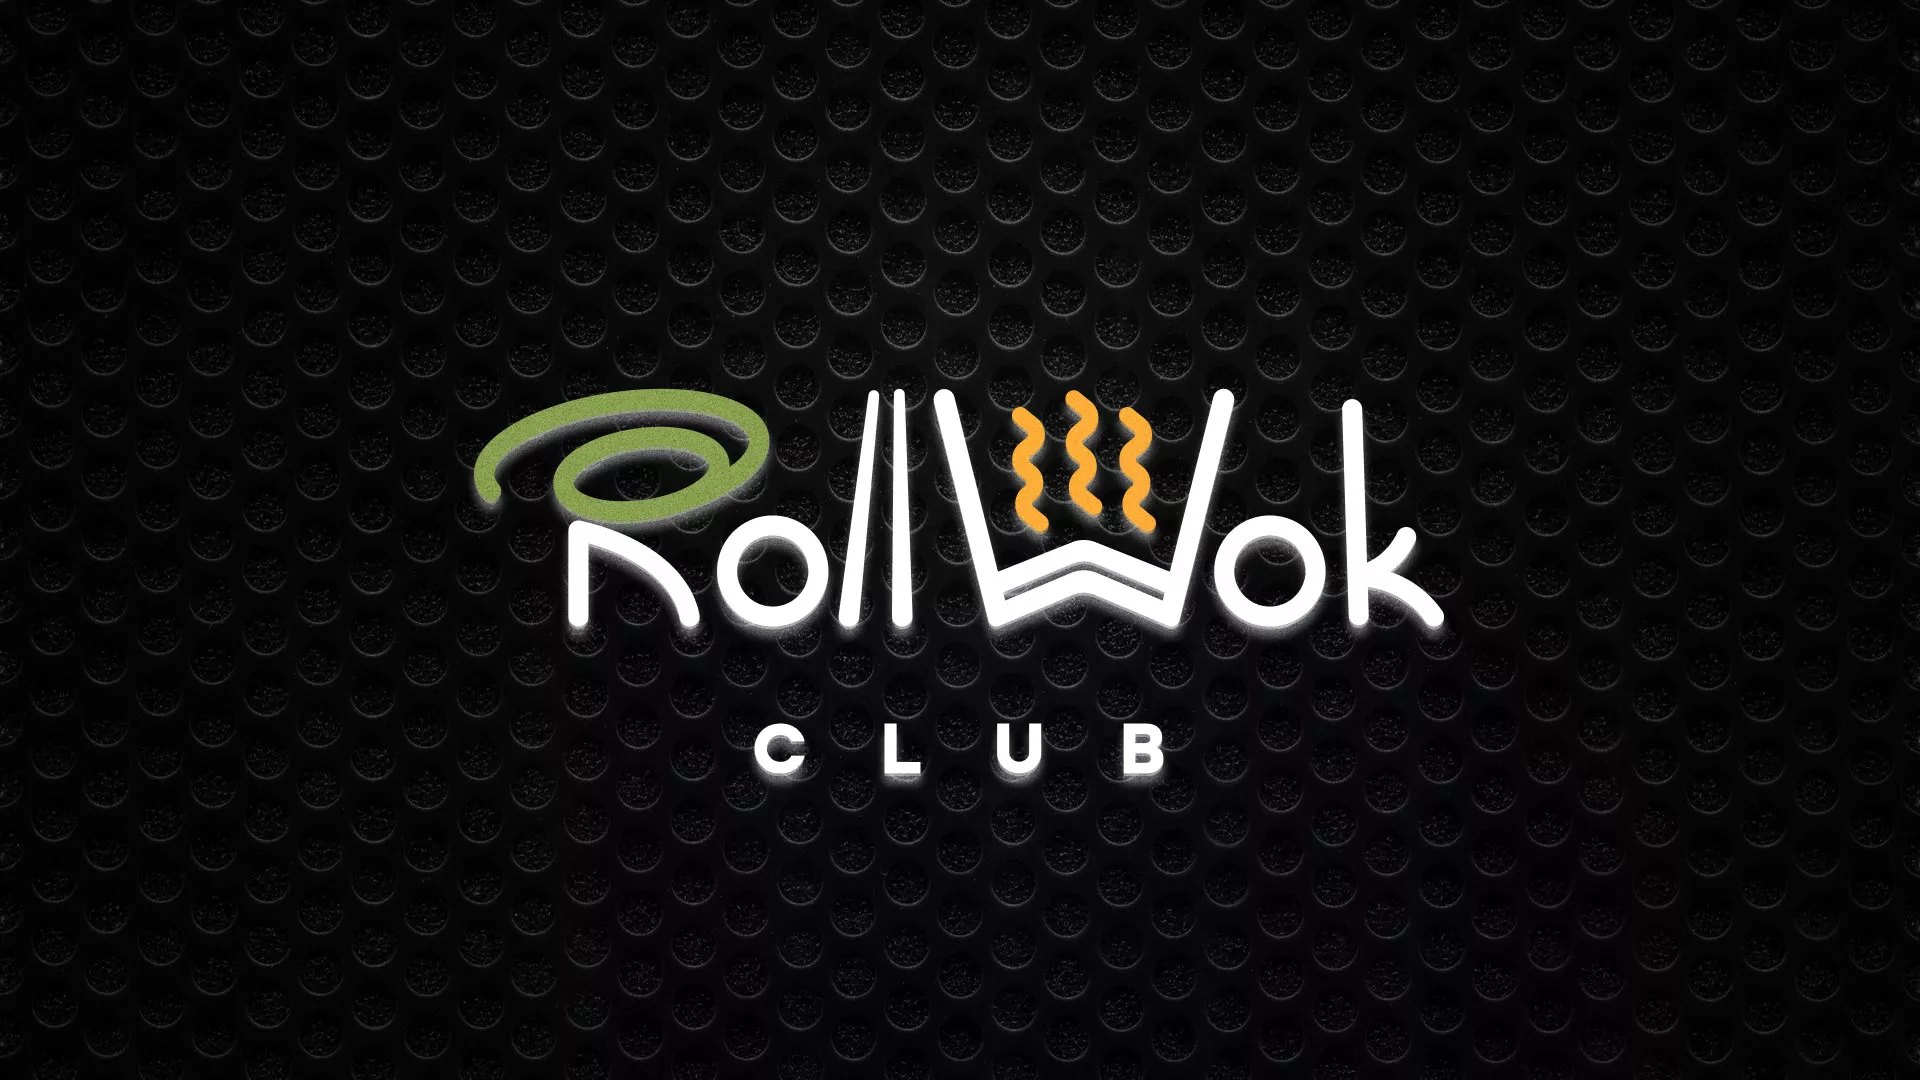 Брендирование торговых точек суши-бара «Roll Wok Club» в Мышкине